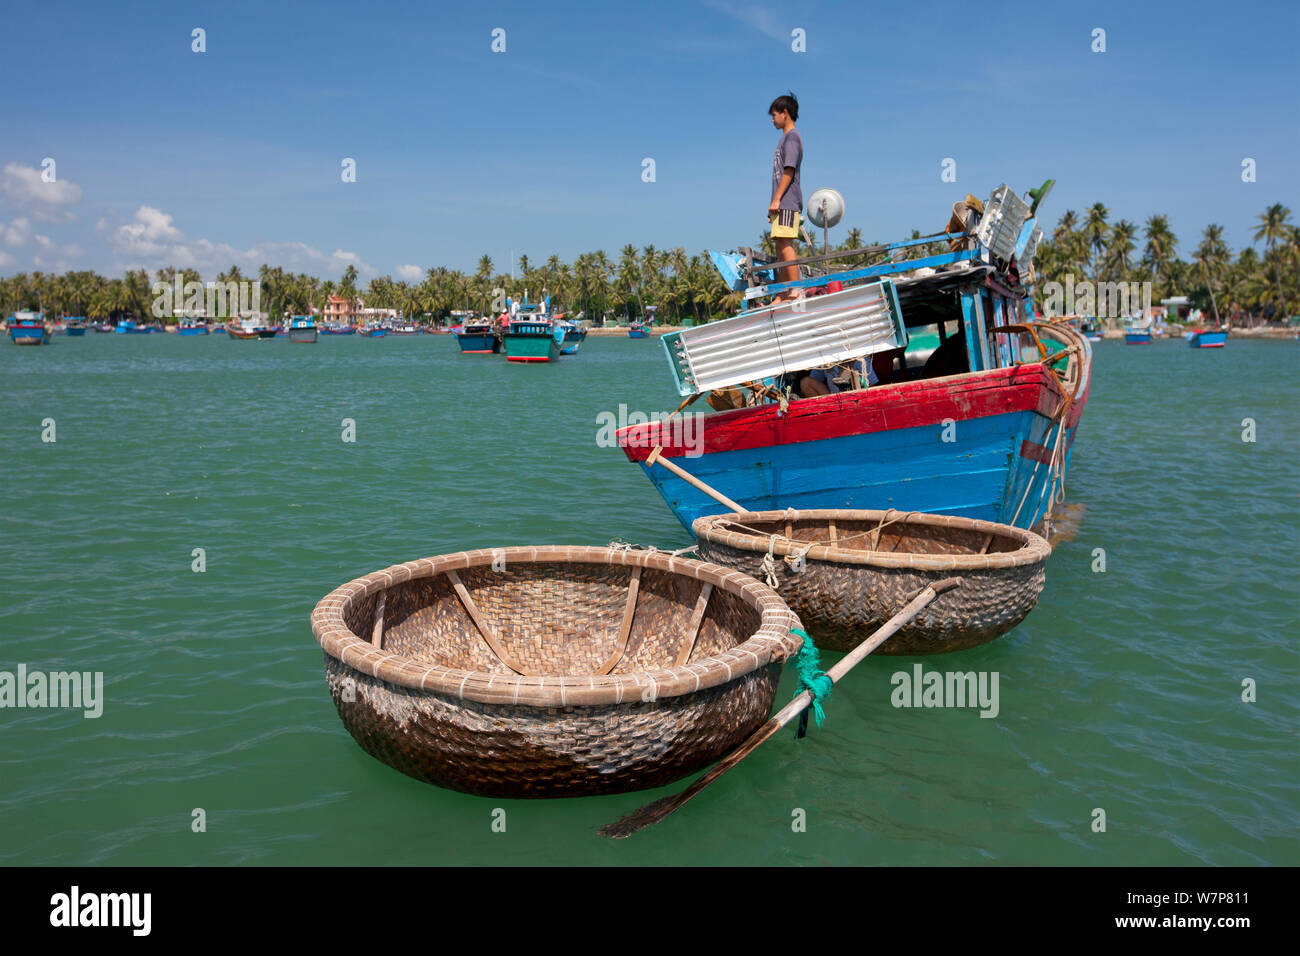 Bateaux de pêche style coracle ronde en Baie du Cumon, Vietnam. Banque D'Images